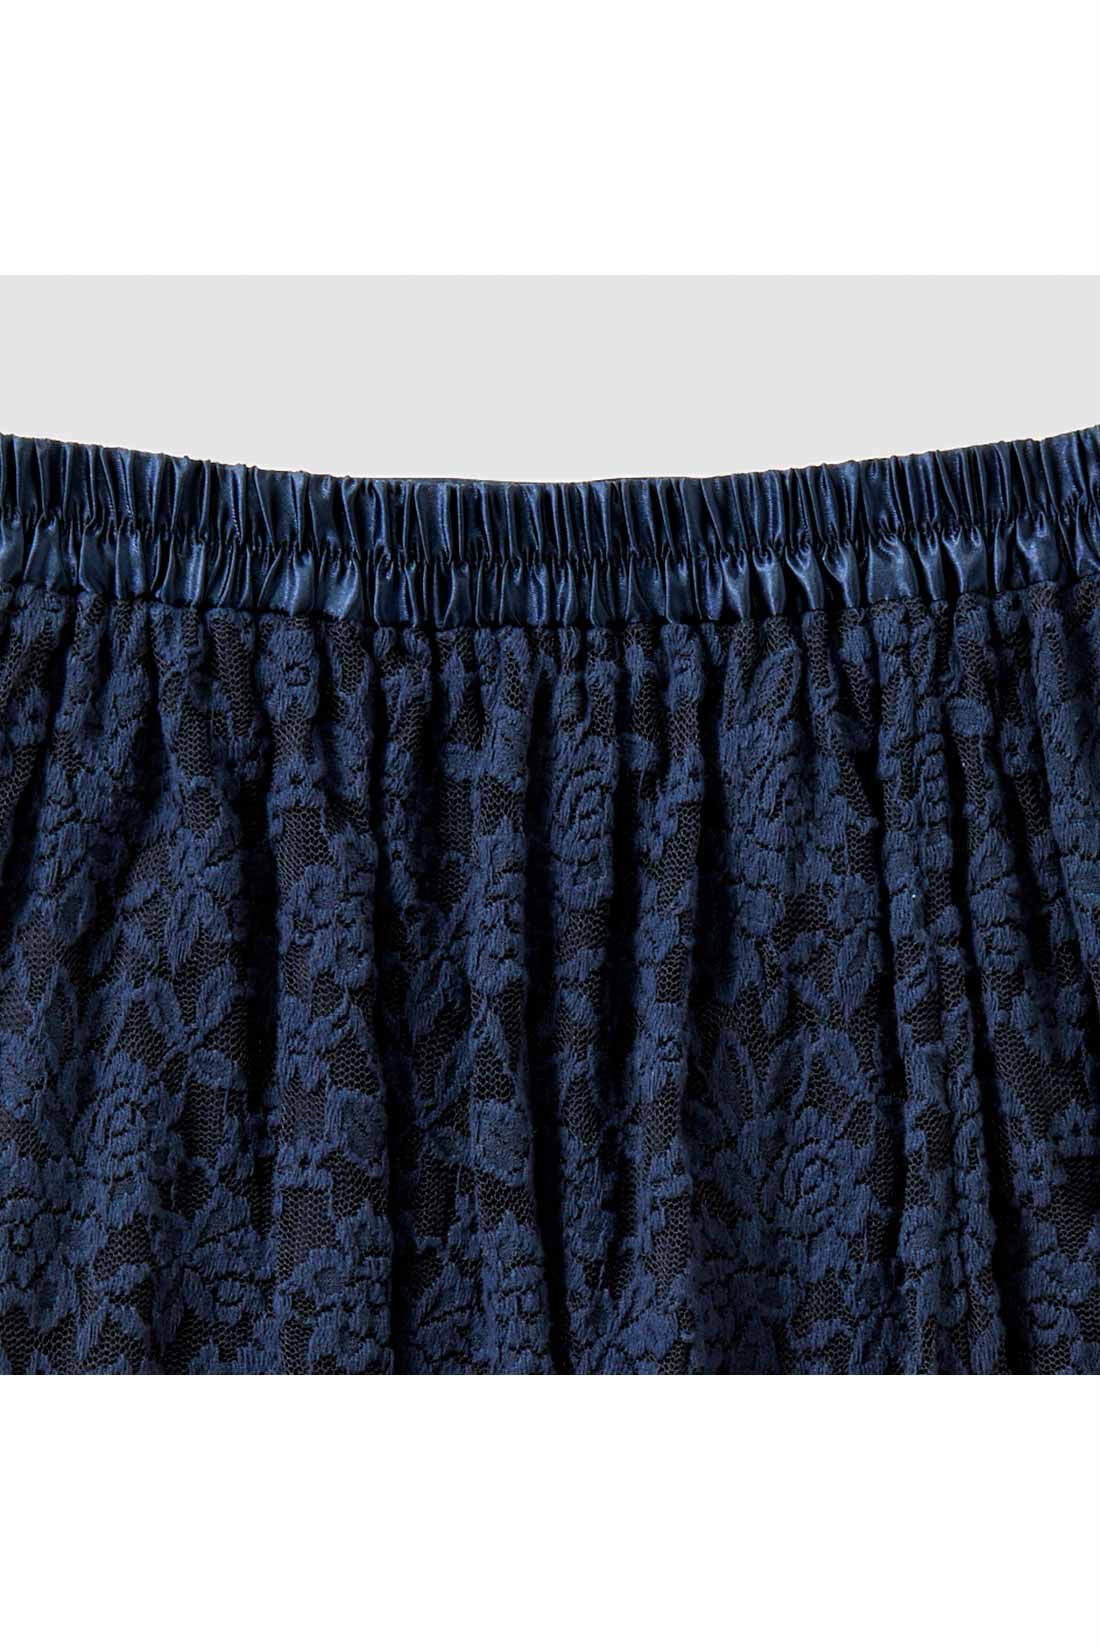 IEDIT|IEDIT[イディット]　帯電防止インナーがうれしい 起毛レーススカート〈ブラック〉|ウエストわきから後ろゴム仕様でらくちん。 ※お届けするカラーとは異なります。